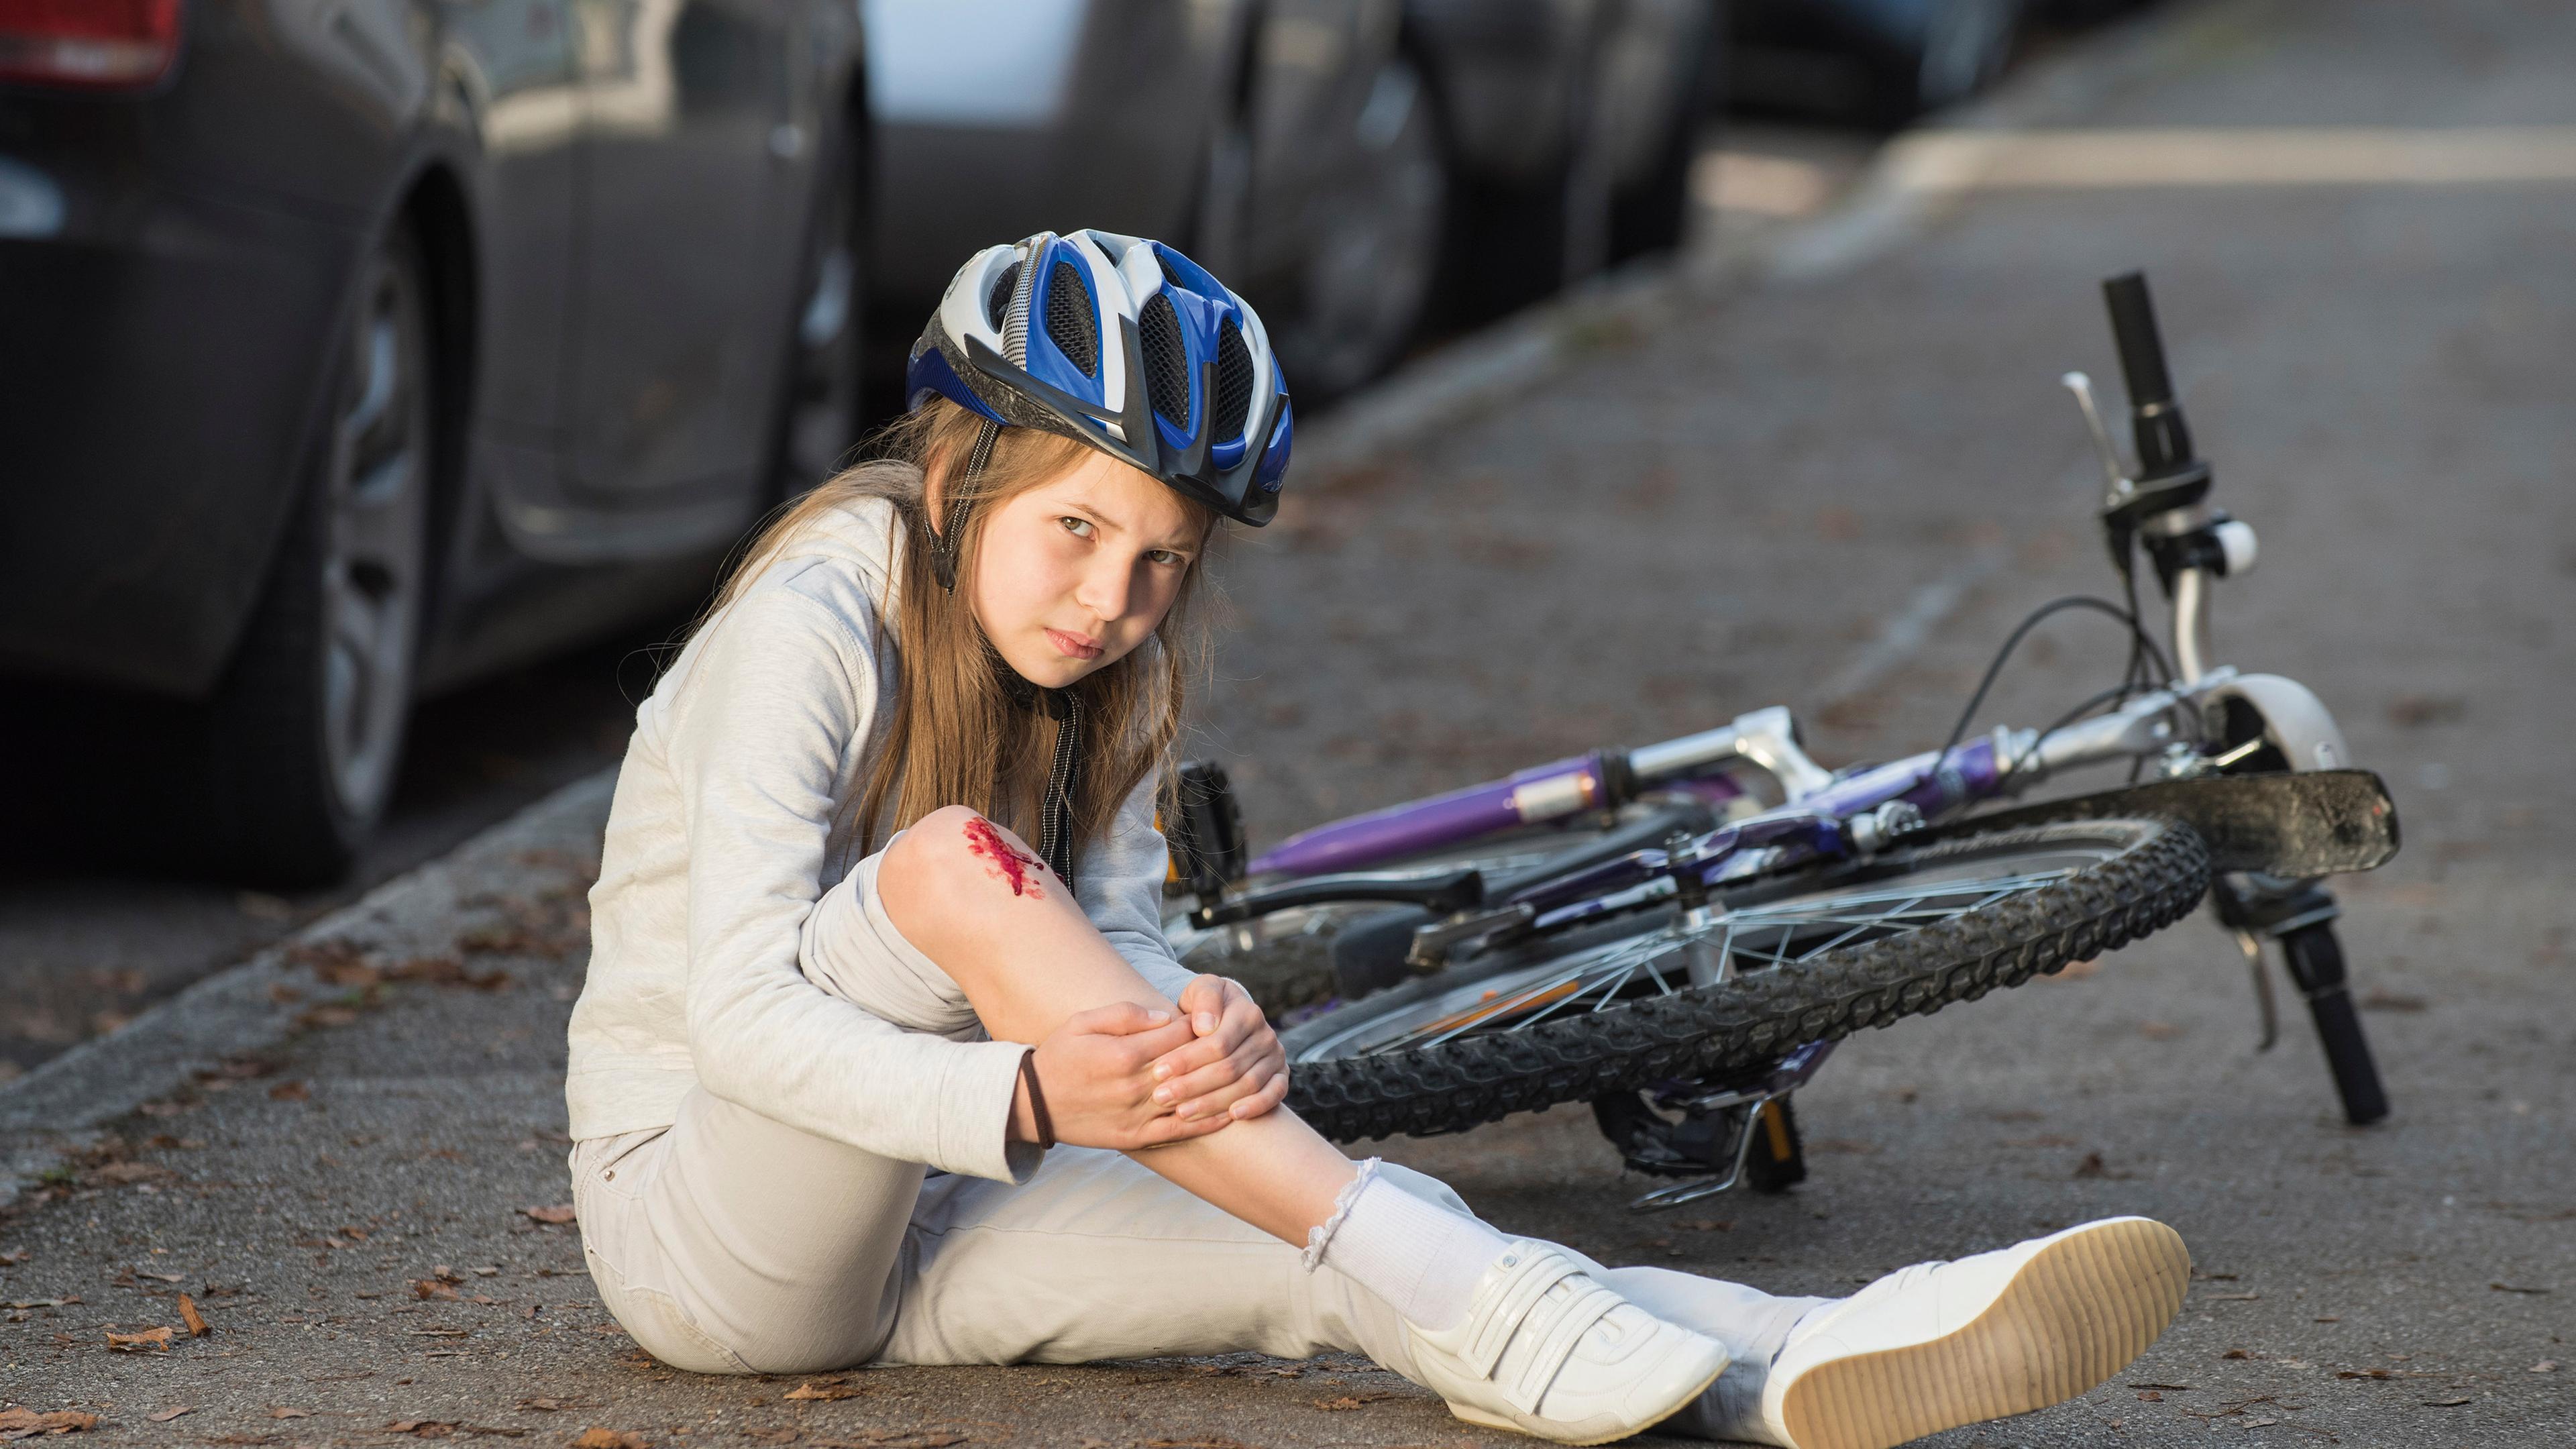 Mädchen mit Verletzung am Knie beim Fahrradfahren